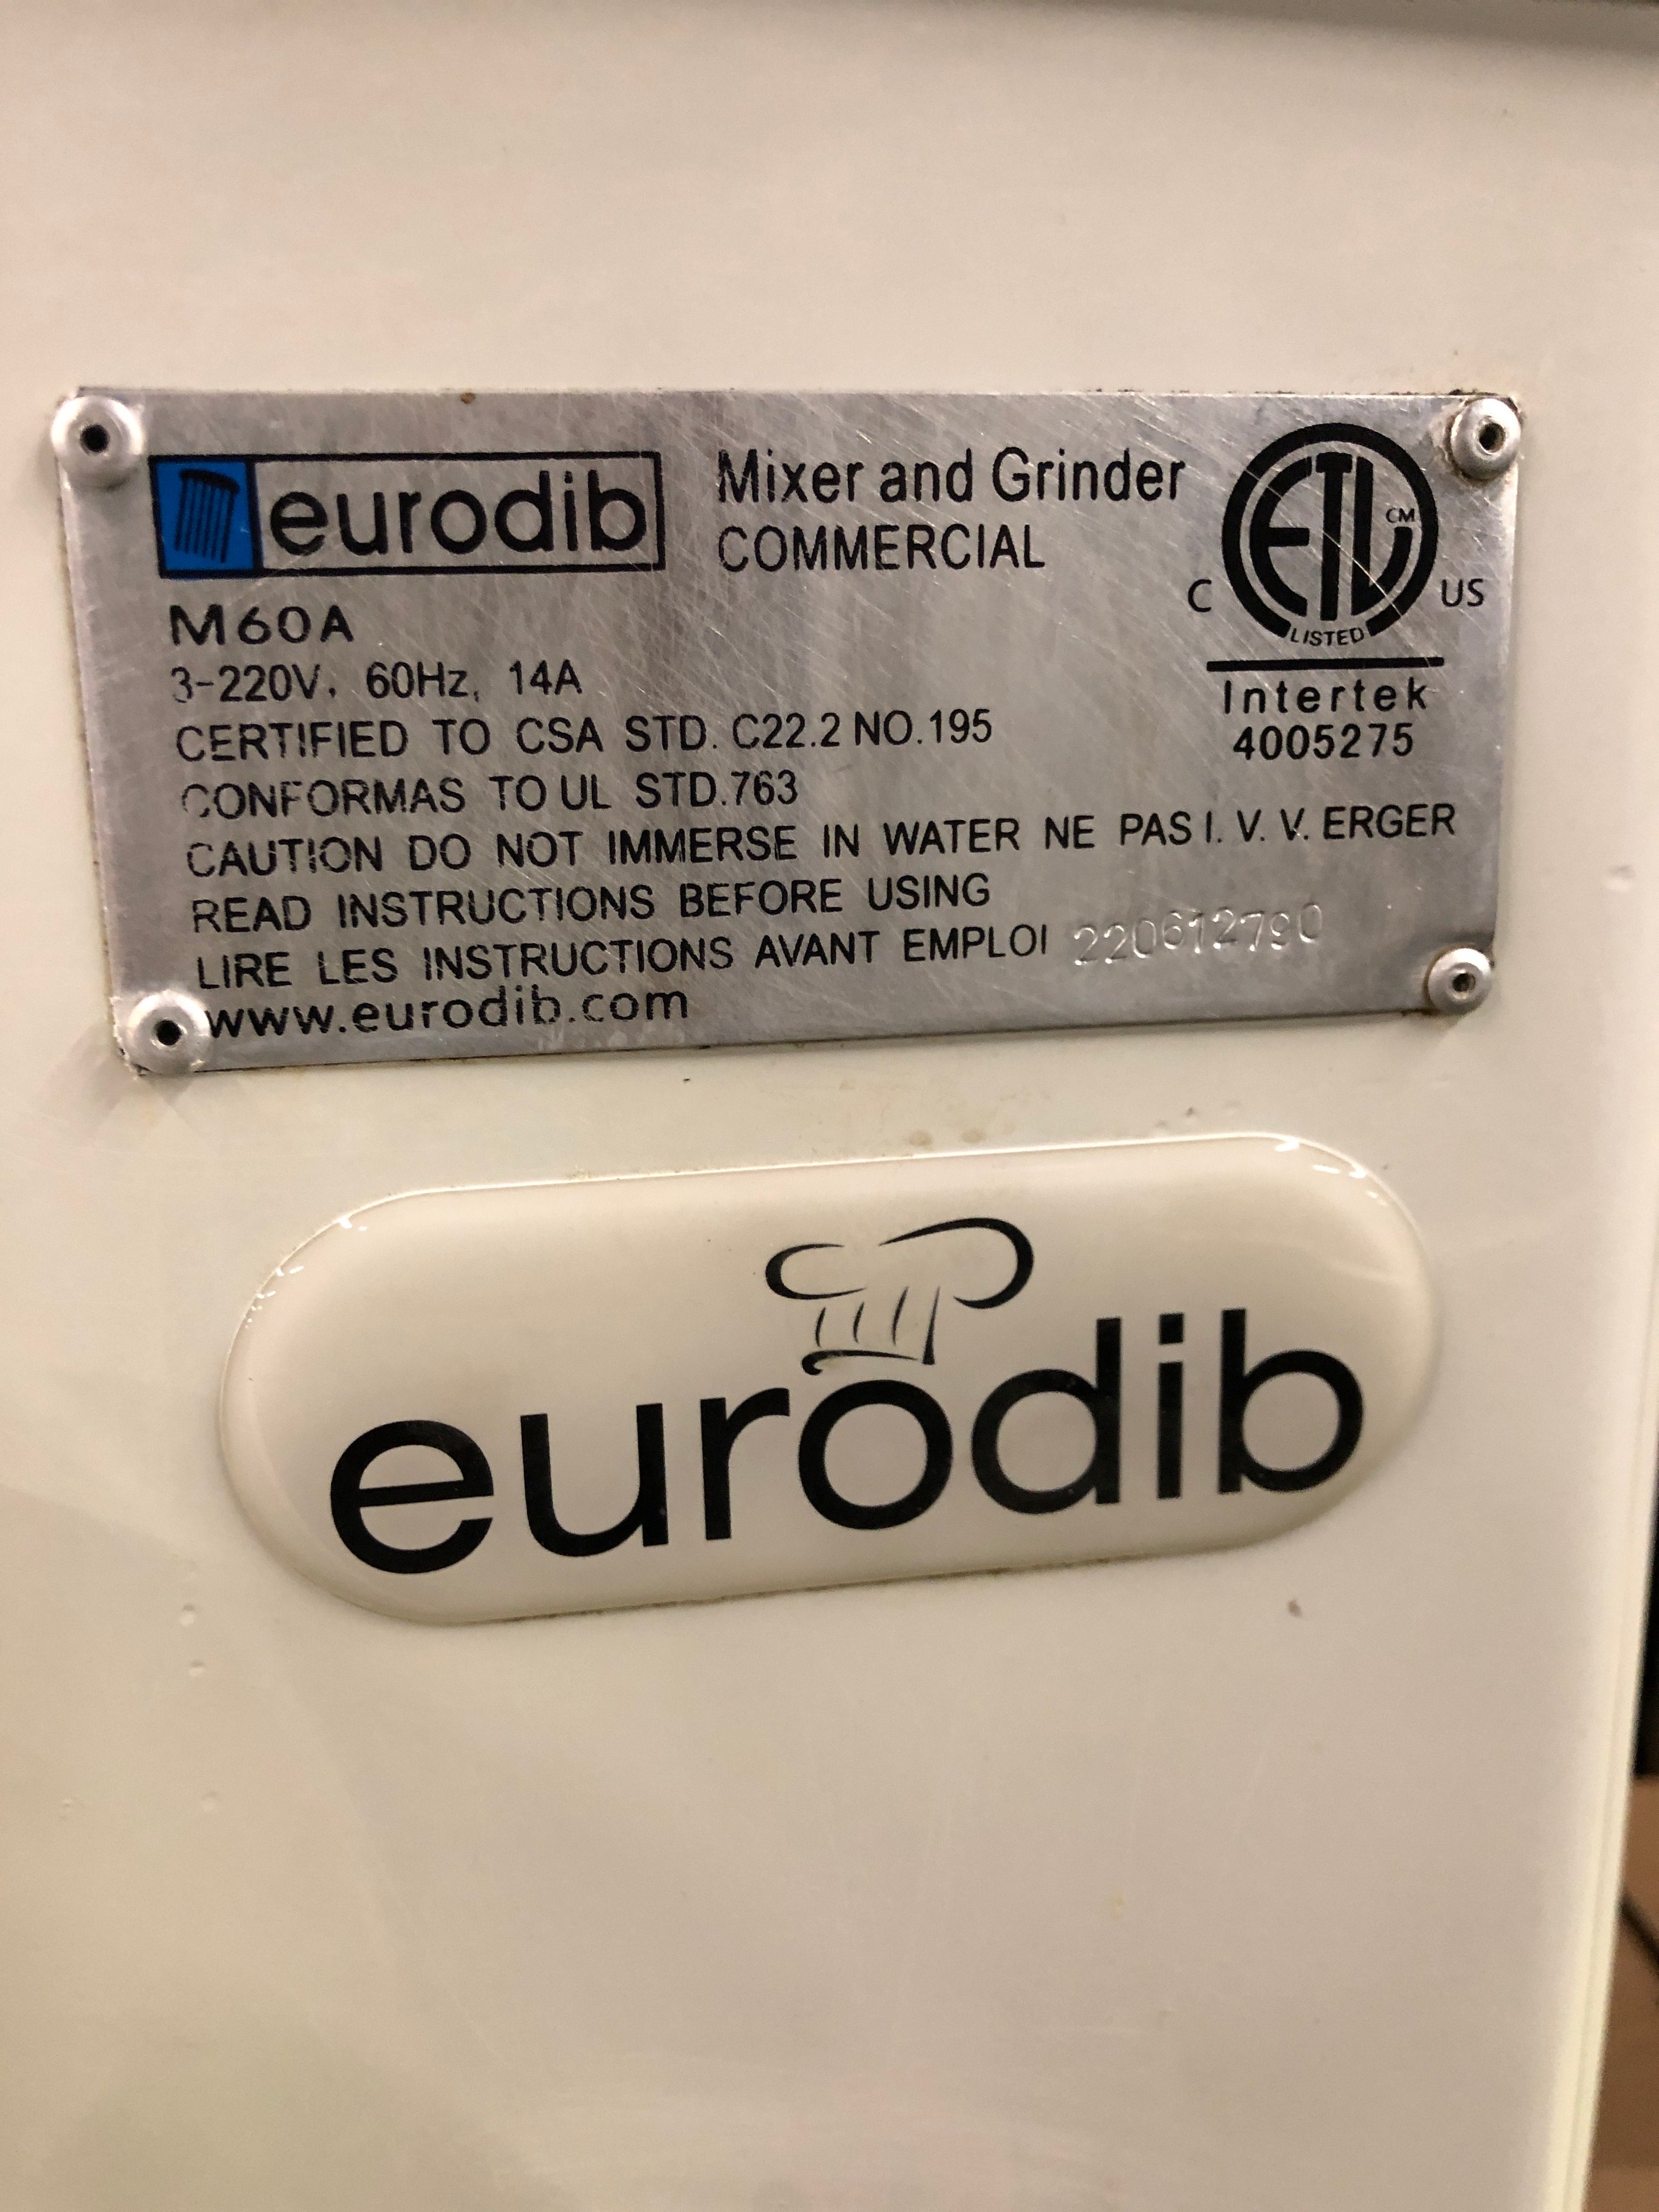 Thumbnail - Eurodib M60A Dough Mixer